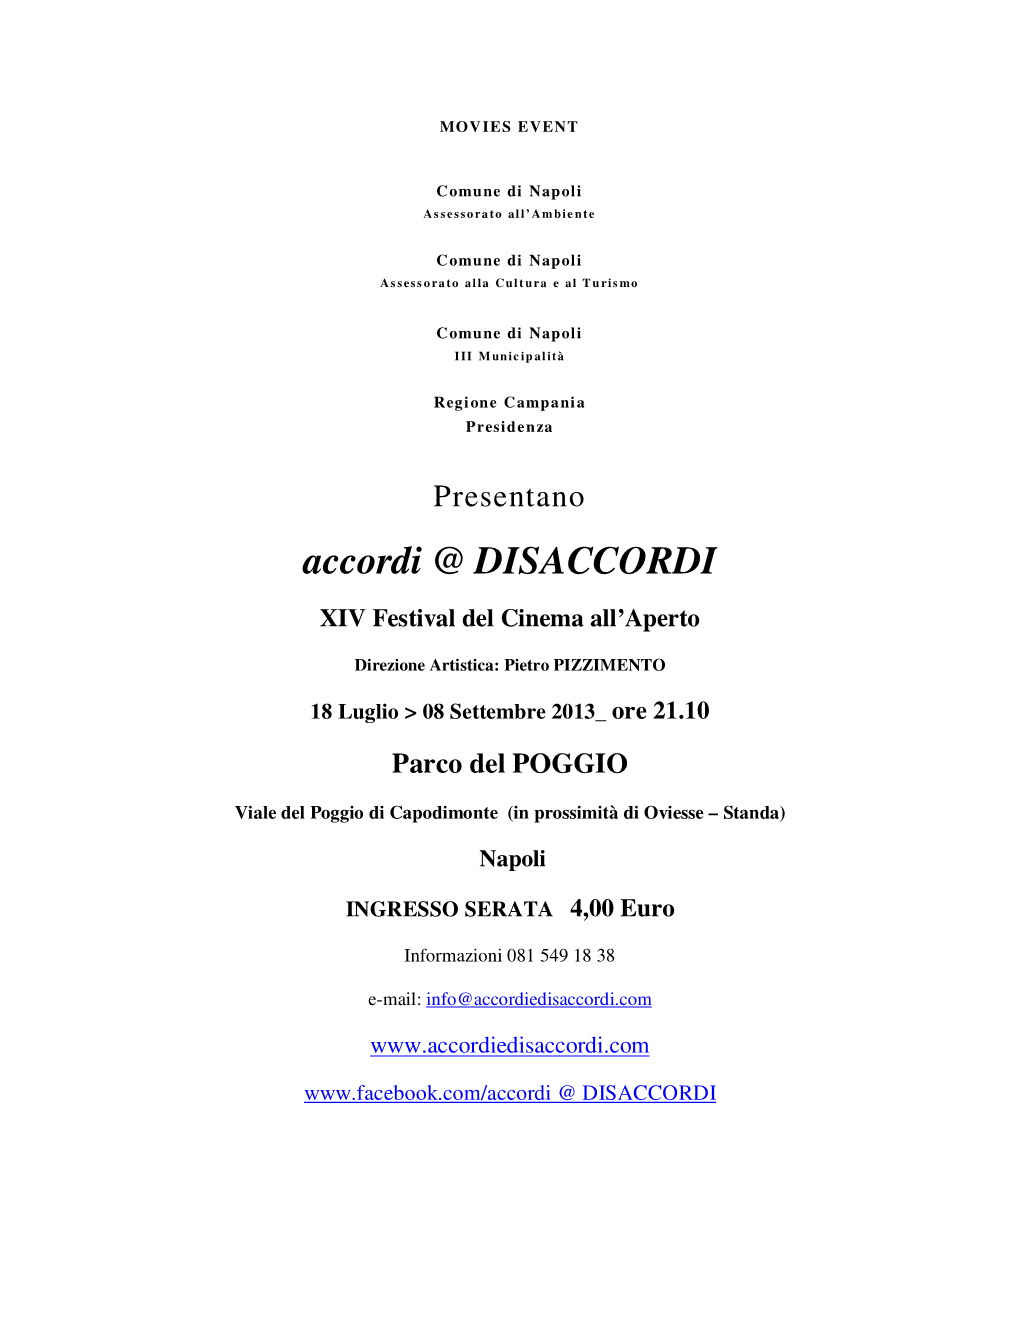 Accordi @ DISACCORDI XIV Festival Del Cinema All’Aperto